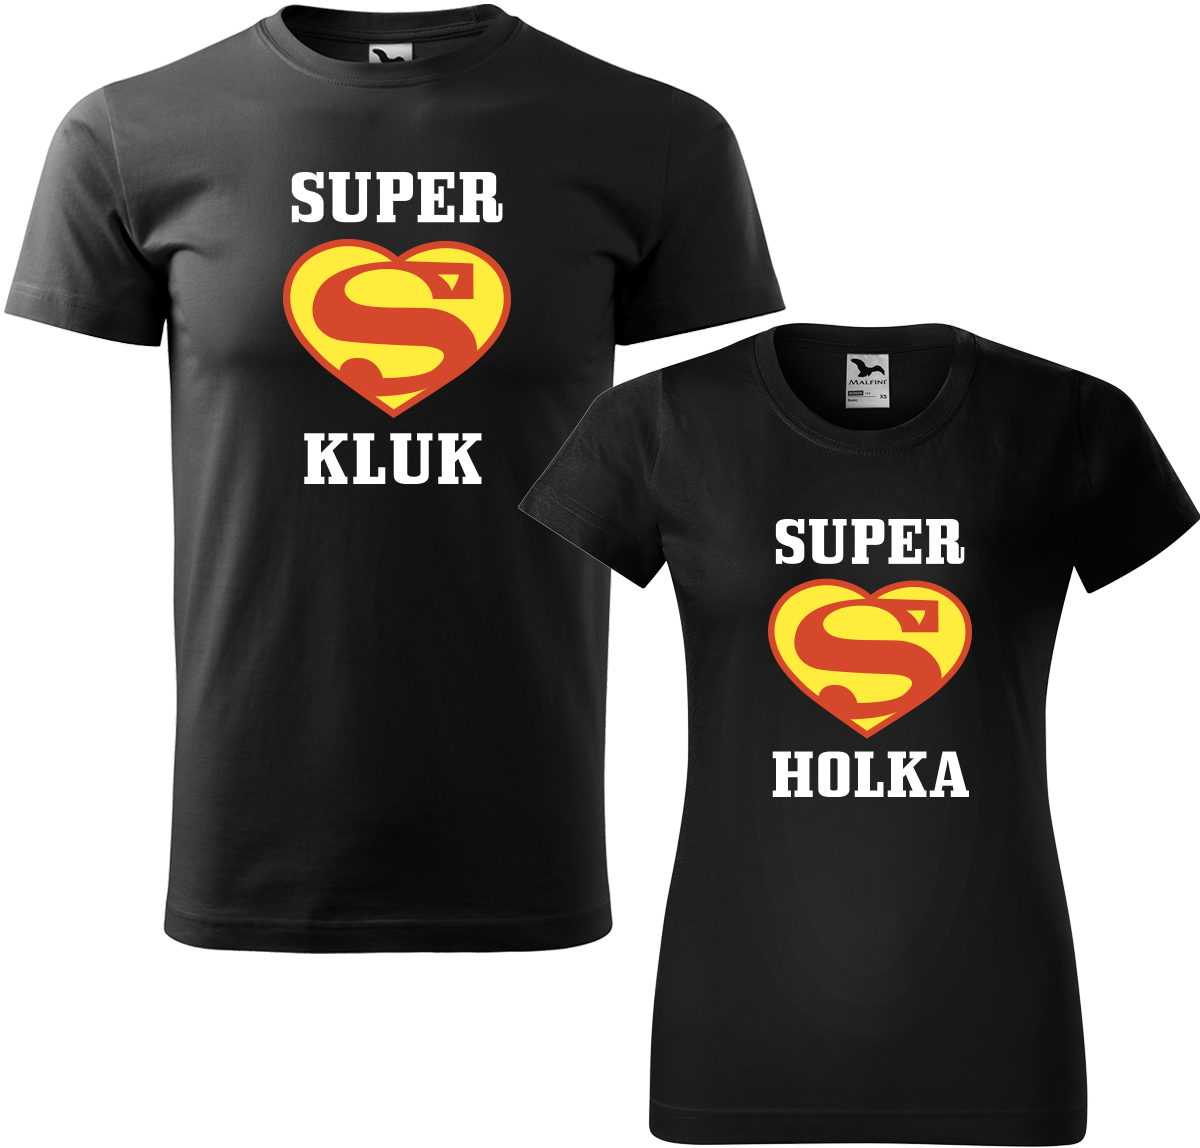 Trička pro páry - Super kluk / Super holka Barva: Černá (01), Velikost dámské tričko: S, Velikost pánské tričko: 4XL